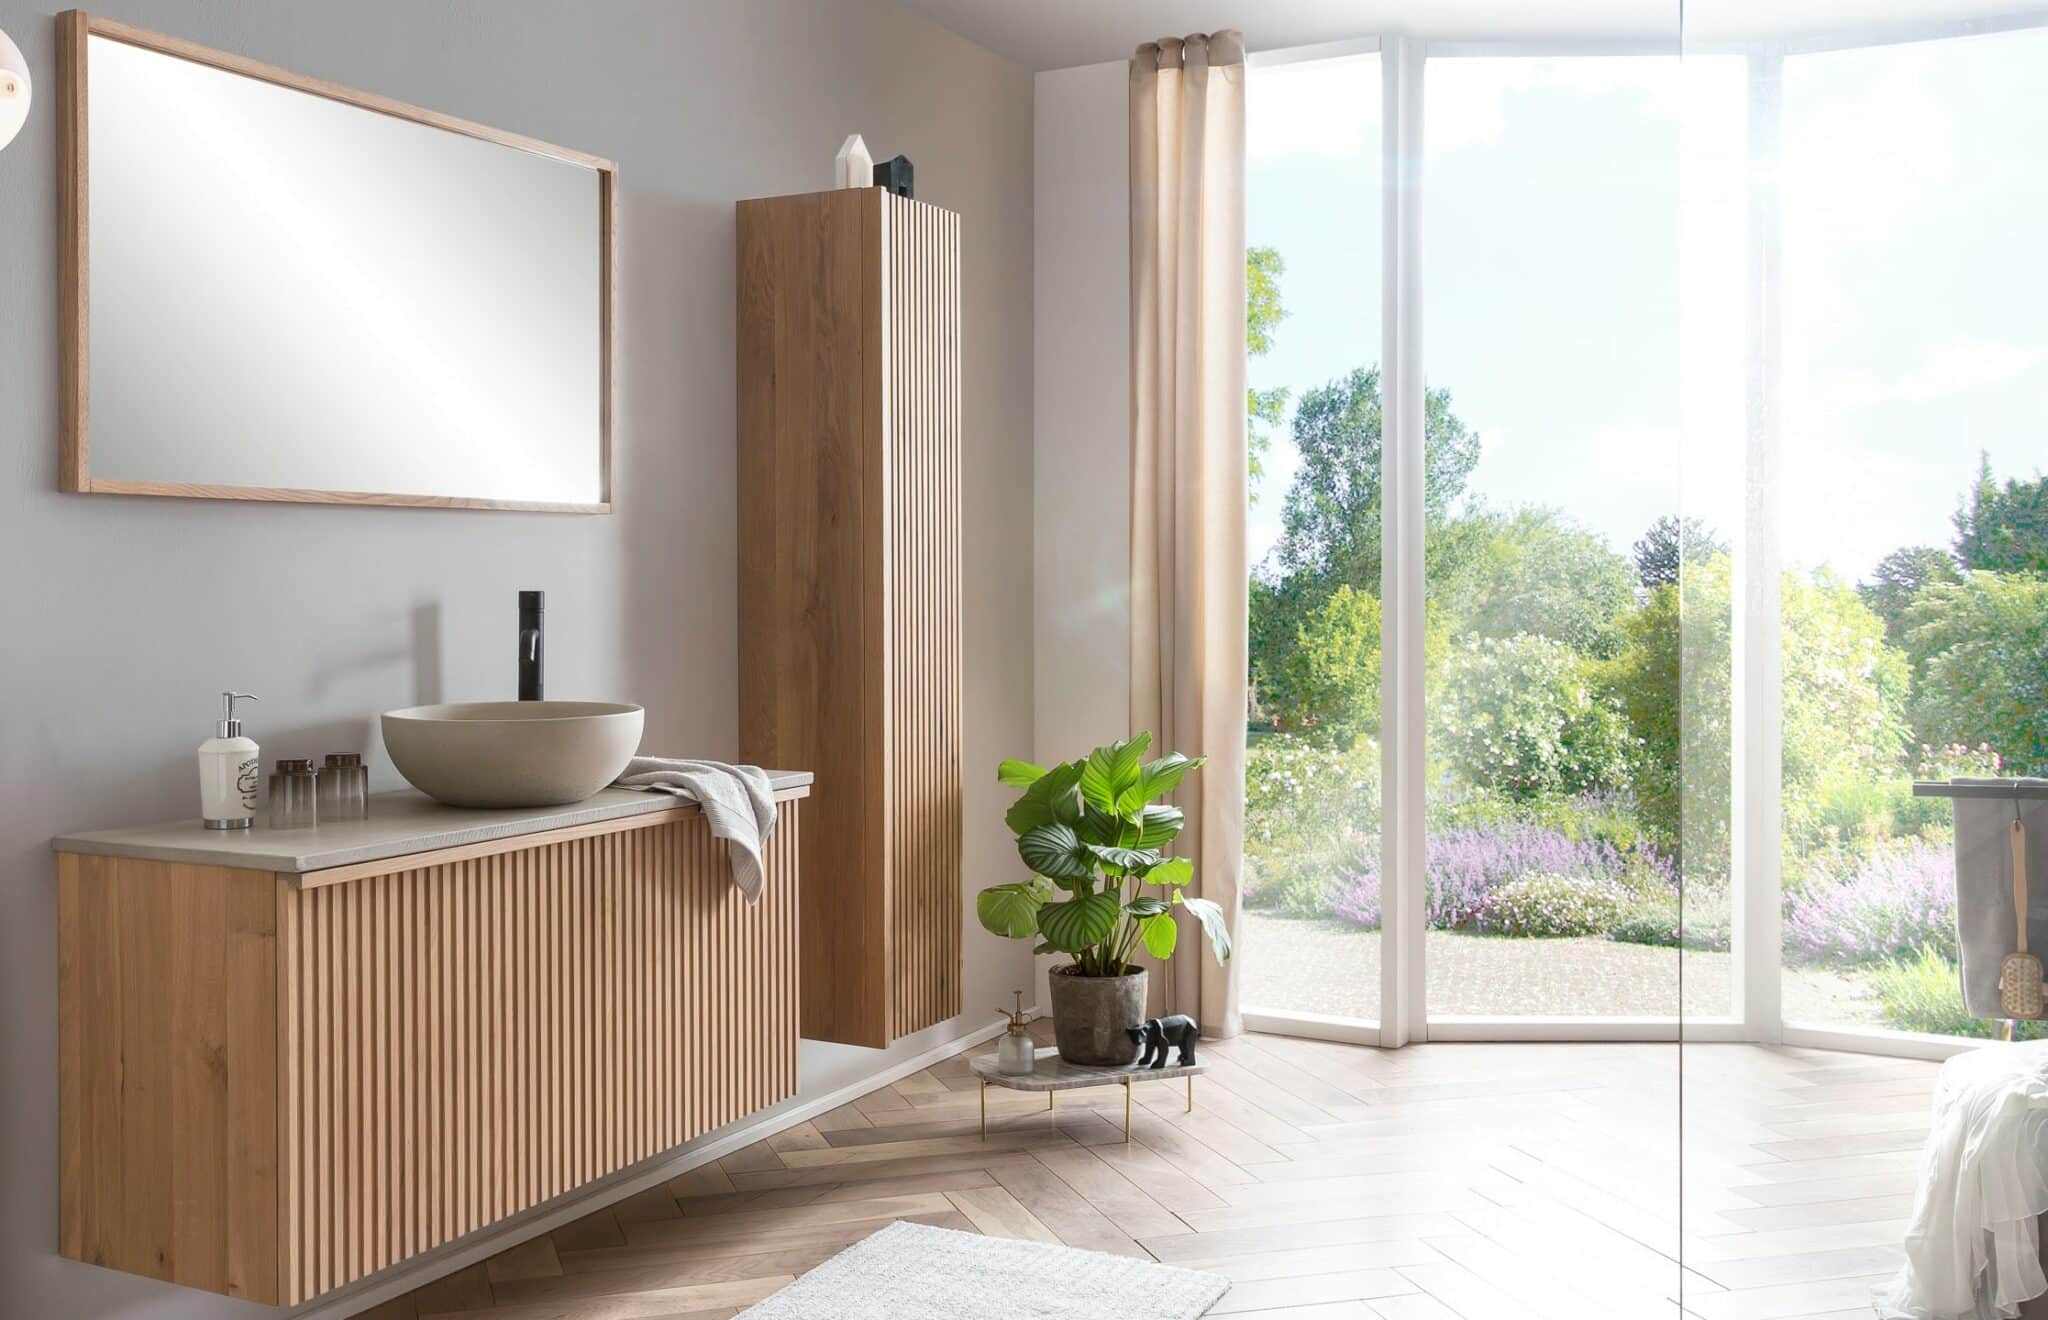 Een hotel chique badkamer met een massief houten badkamermeubel, een houten kolomkast, en een houten spiegel. Op het badmeubel is een betonnen wastafelblad en een betonnen waskom